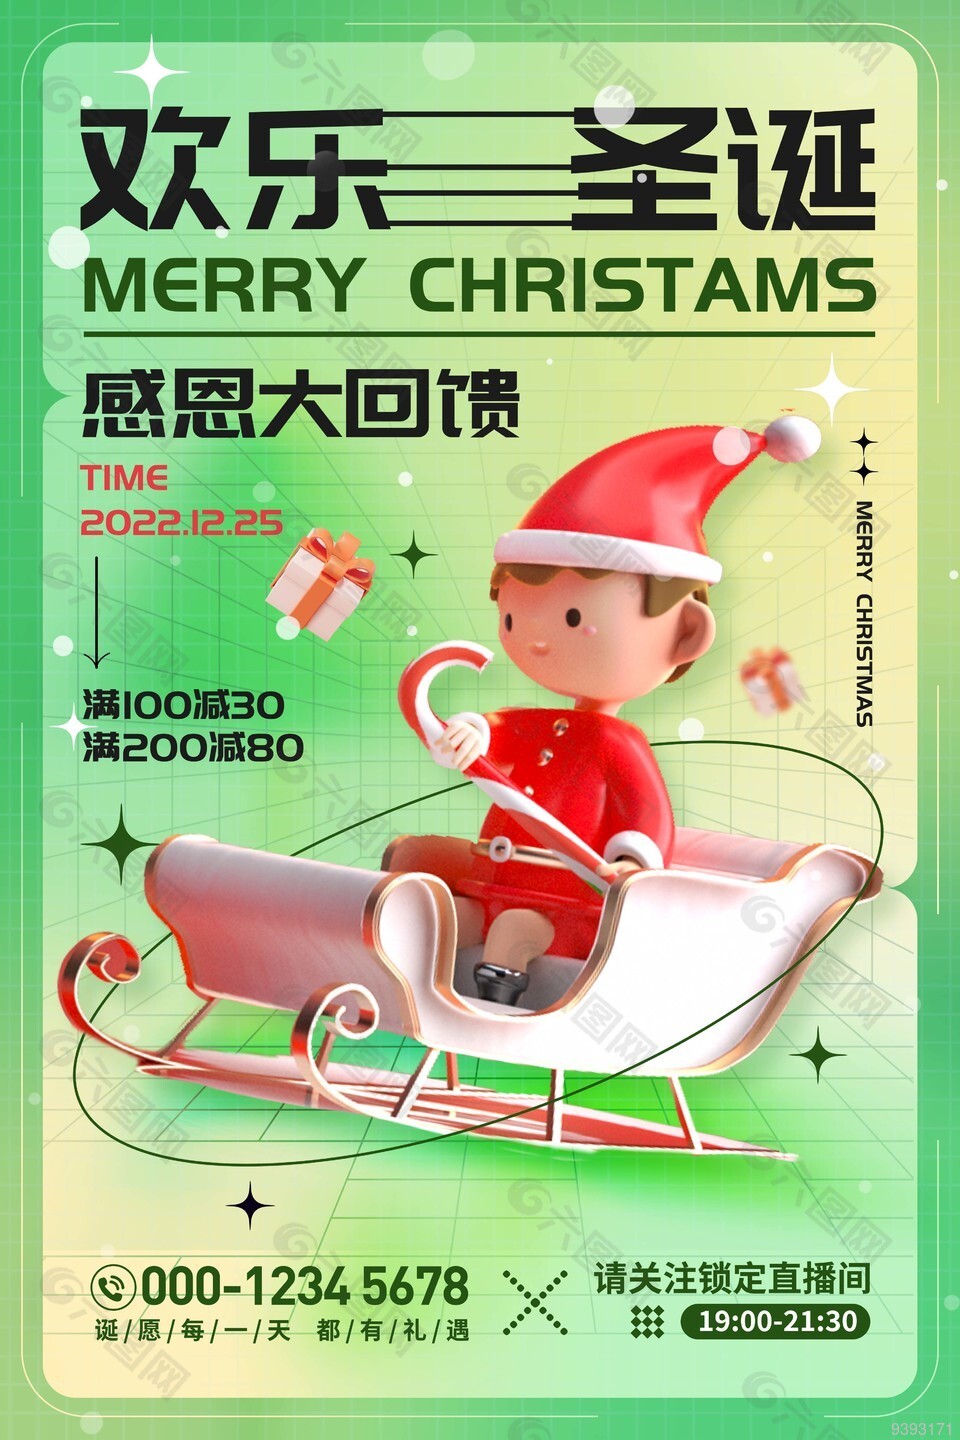 欢乐圣诞活动直播间预告海报设计